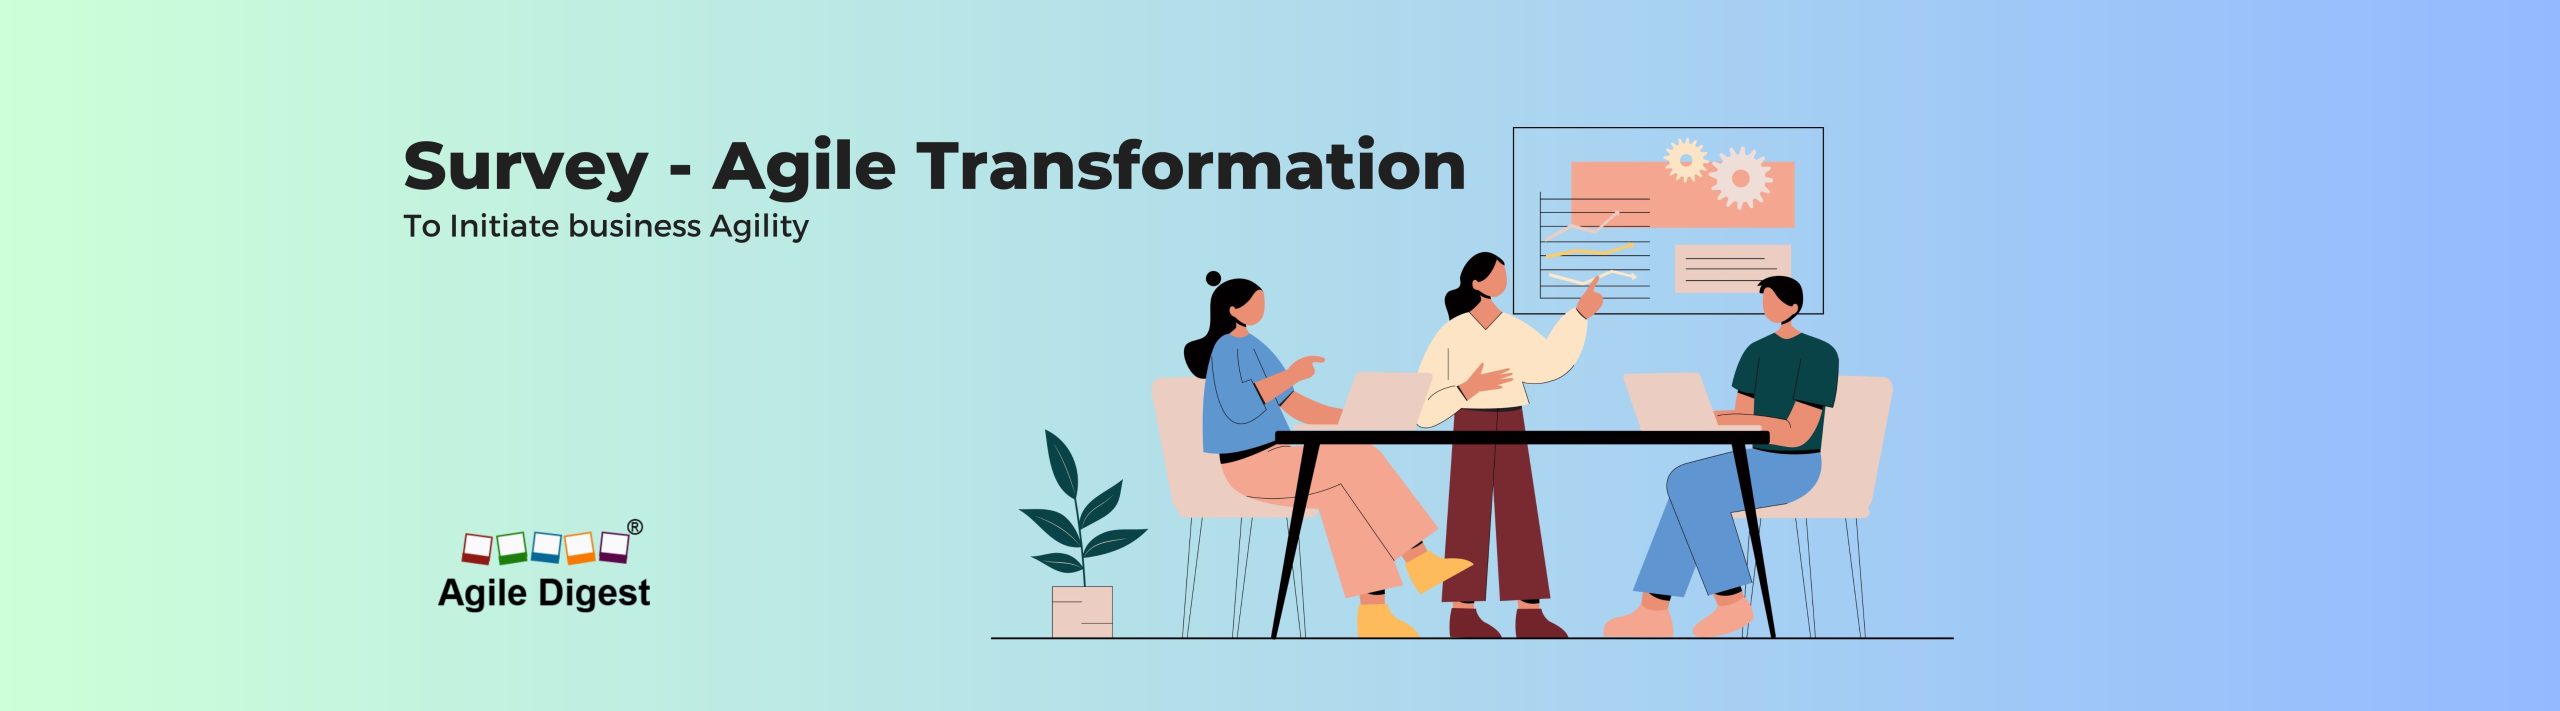 Agile Transformation Survey - Enterprise